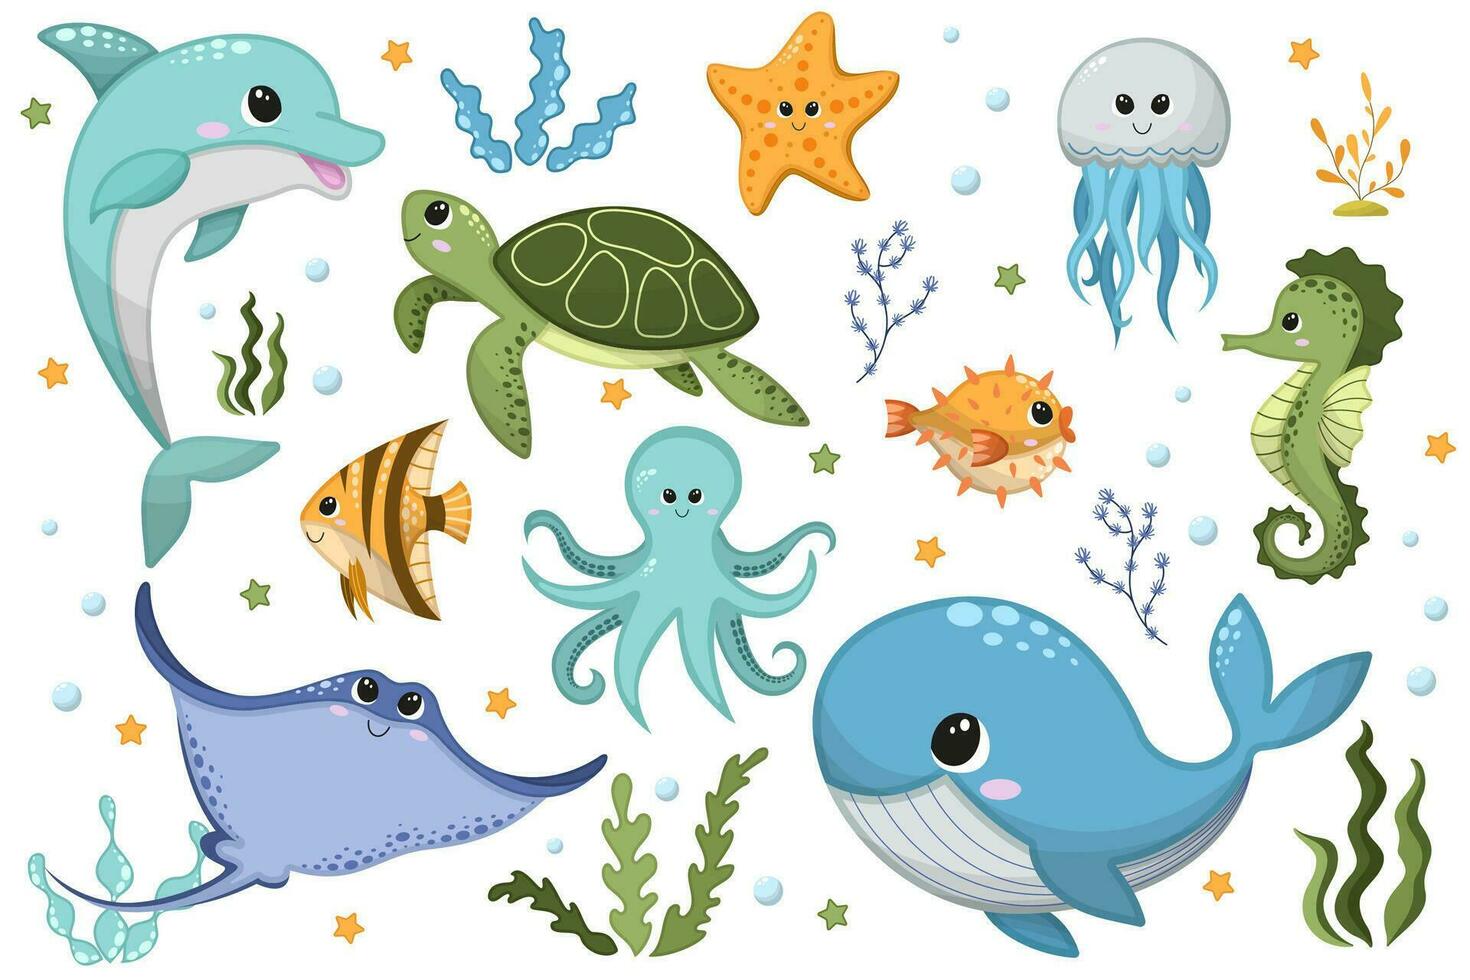 vector dibujos animados ilustración de linda contento mar animales para diseño elemento en blanco antecedentes. delfín, ballena, pulpo, Medusa, mantarraya, estrella de mar, caballo de mar, tortuga, algas, agua bombillas, fumador pez.